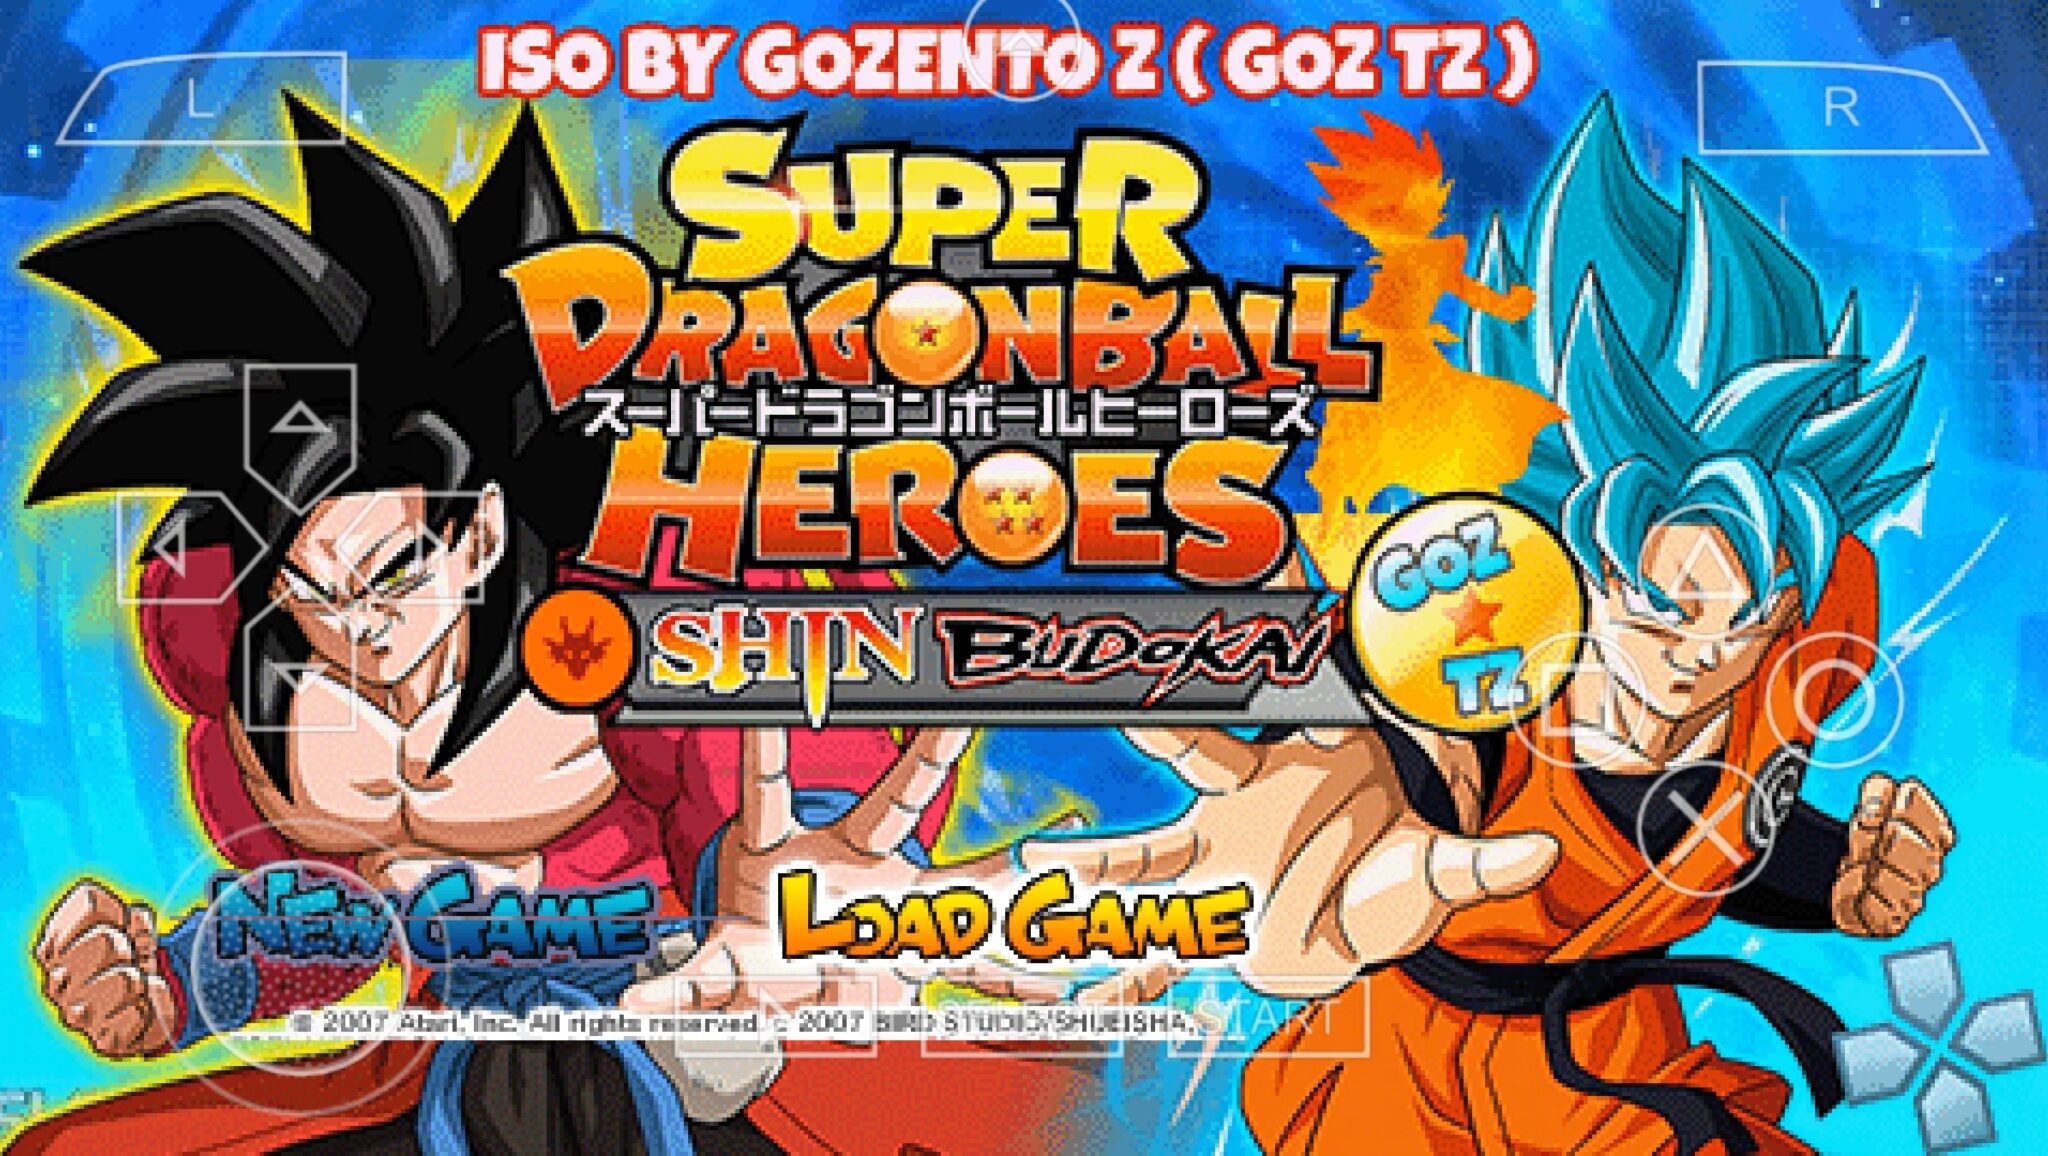 Super Dragon Ball Heroes Shin Budokai 2 Game